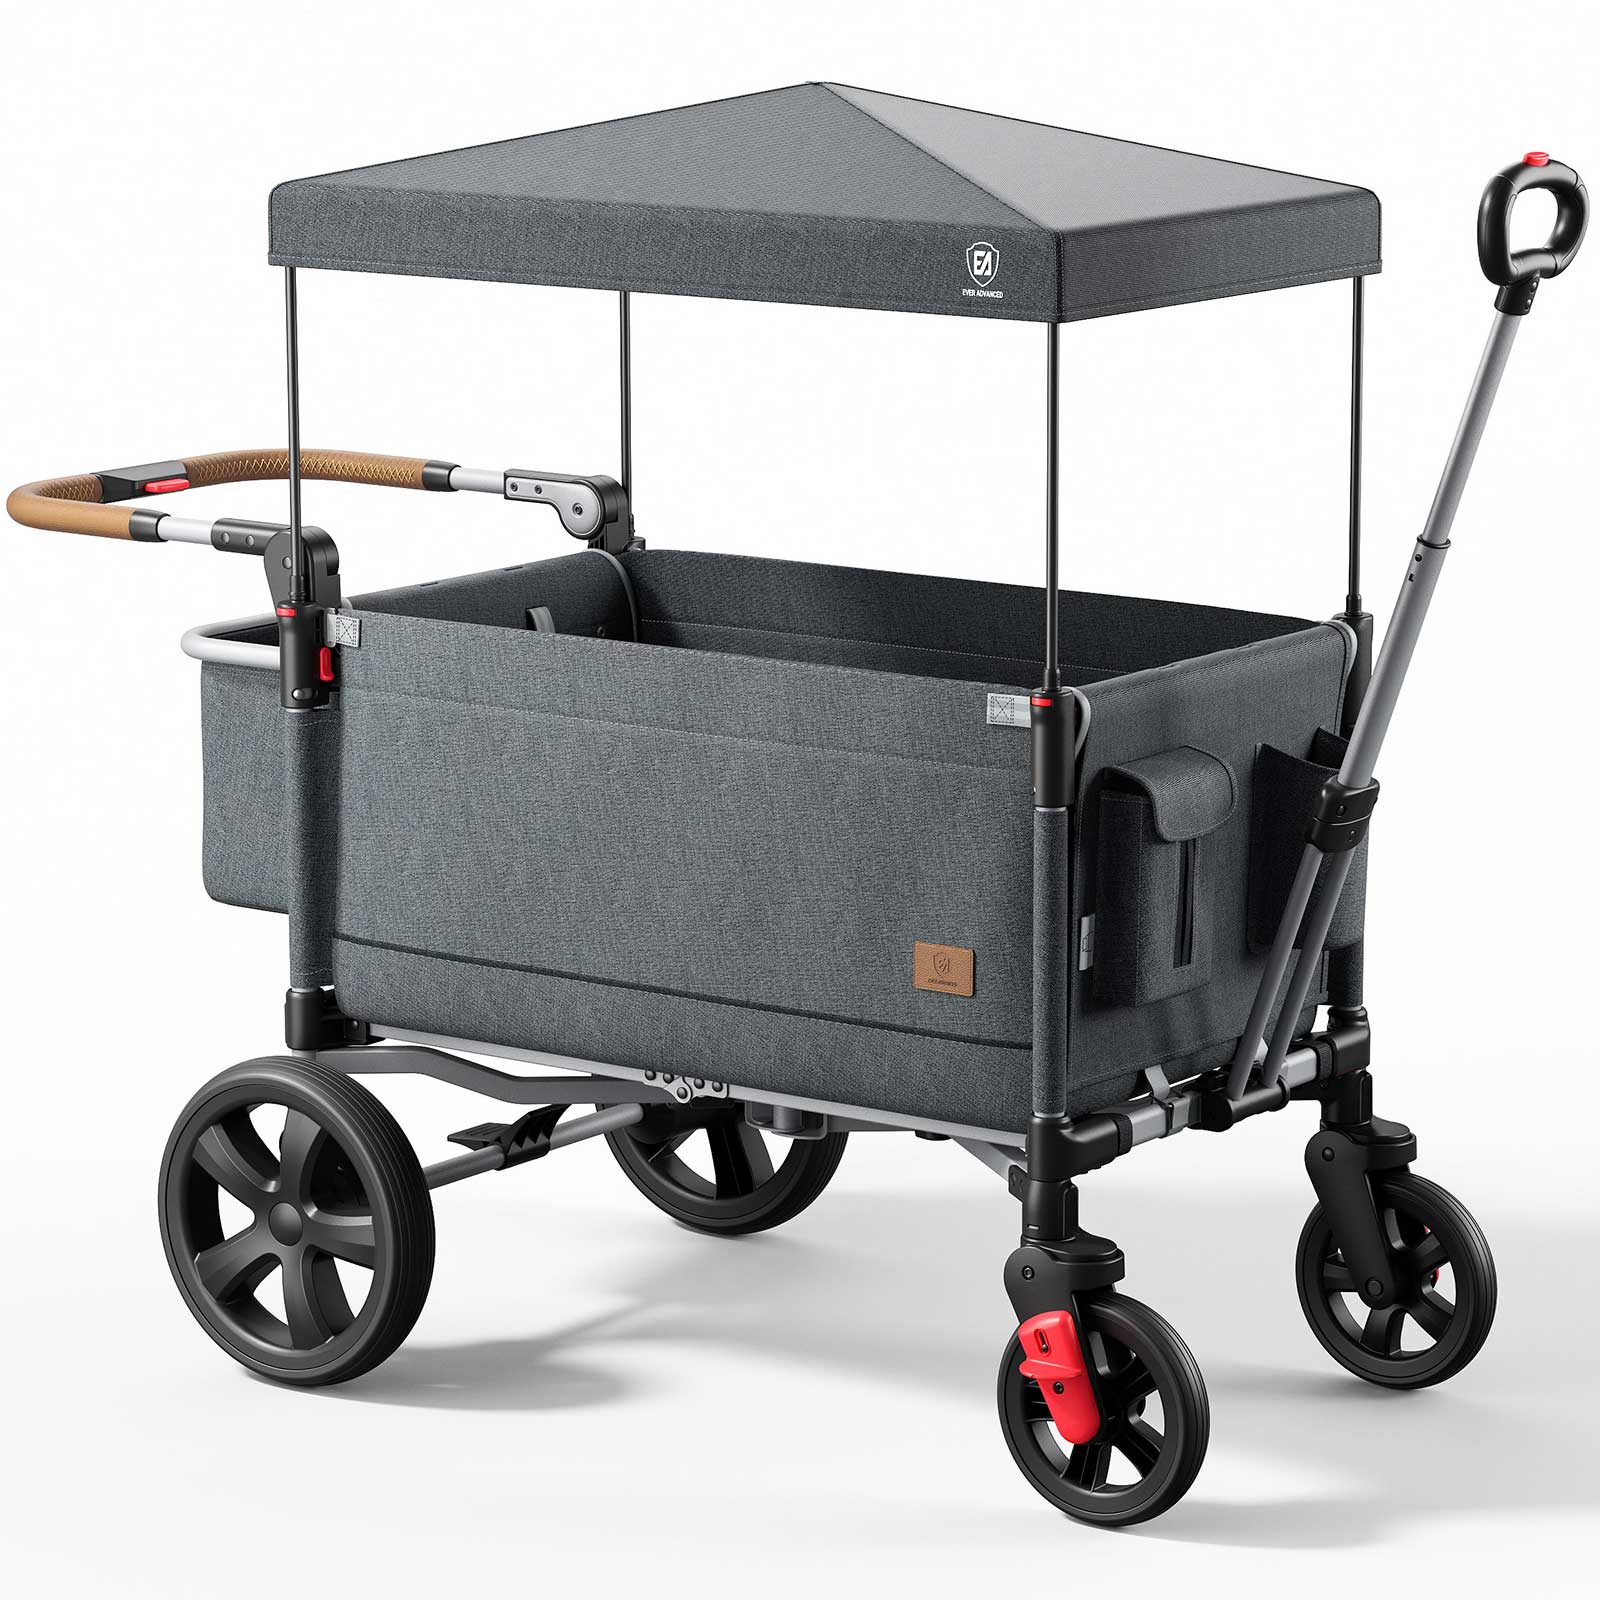 Side-Unzip Wagon Stroller